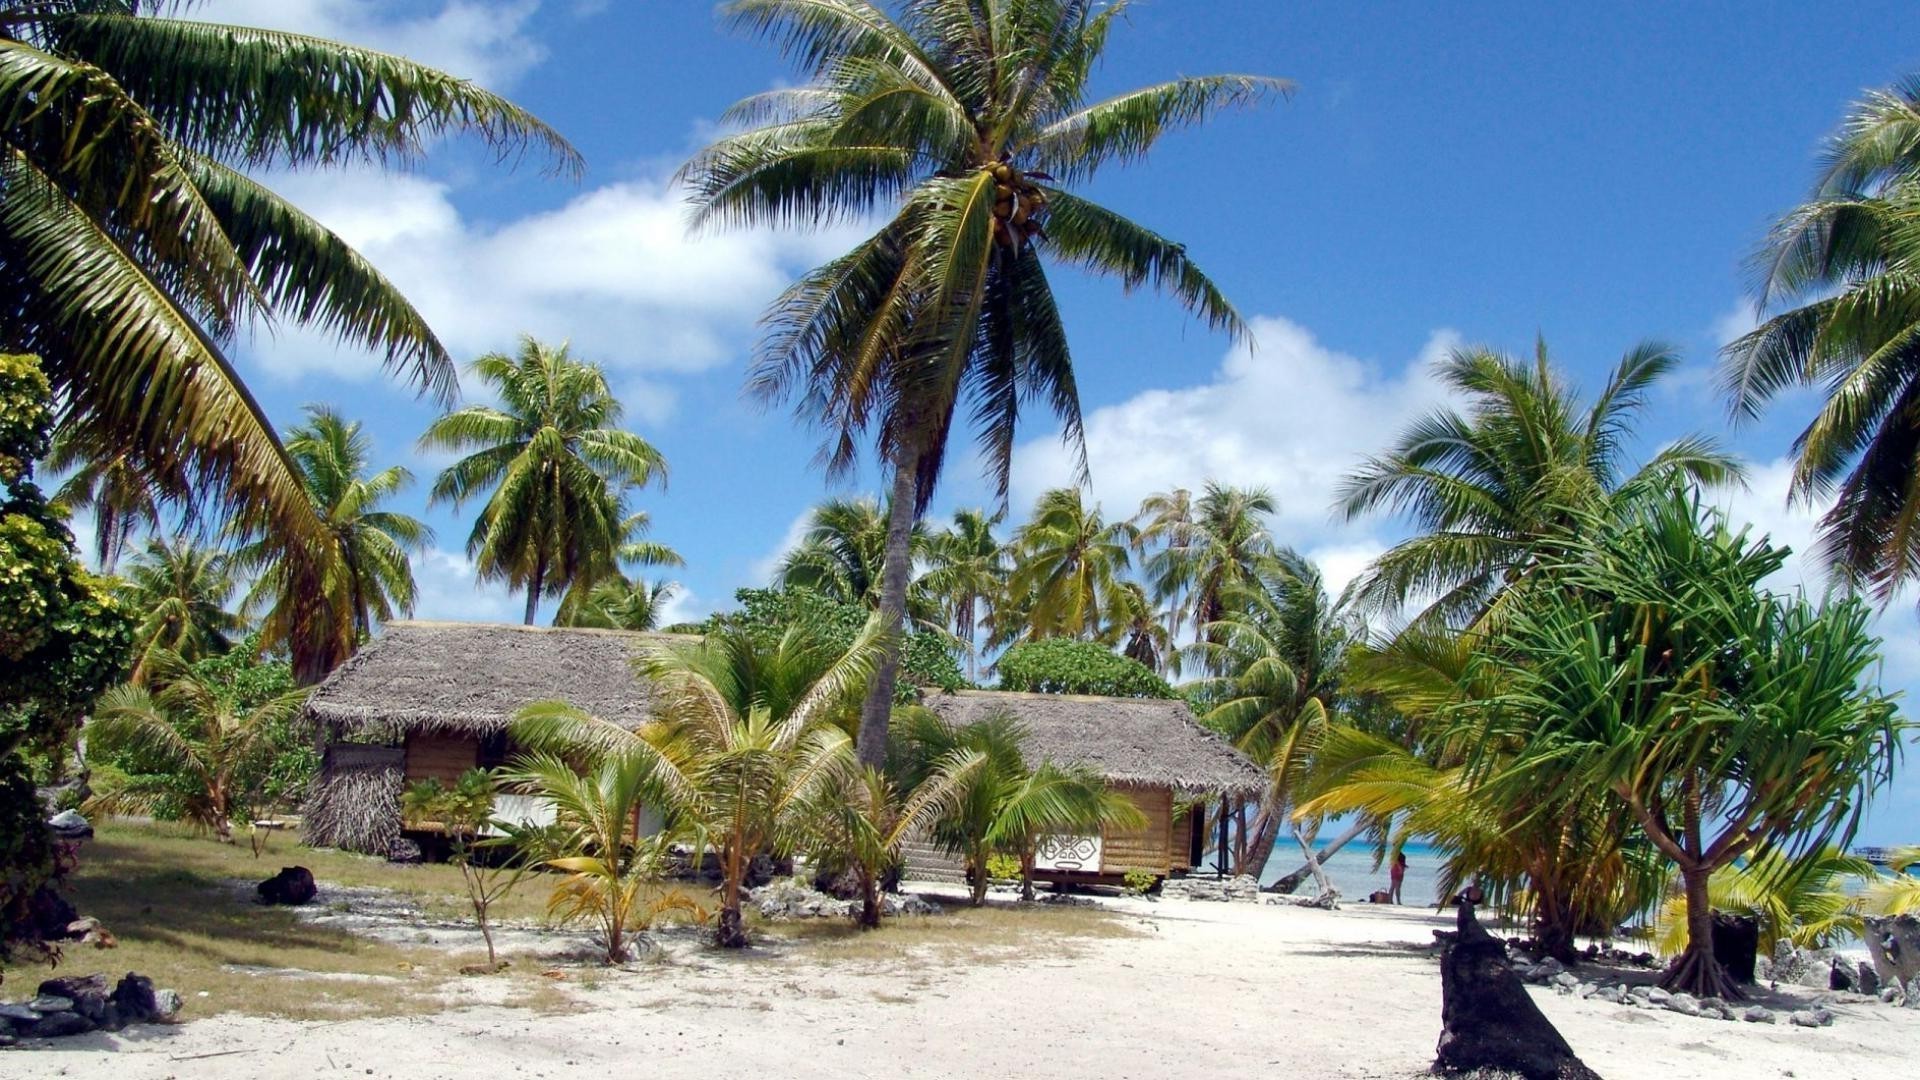 острова ладони тропический кокосовое пляж курорт отпуск остров рай путешествия песок моря экзотические океан дерево идиллия отель лето релаксация солнце туризм